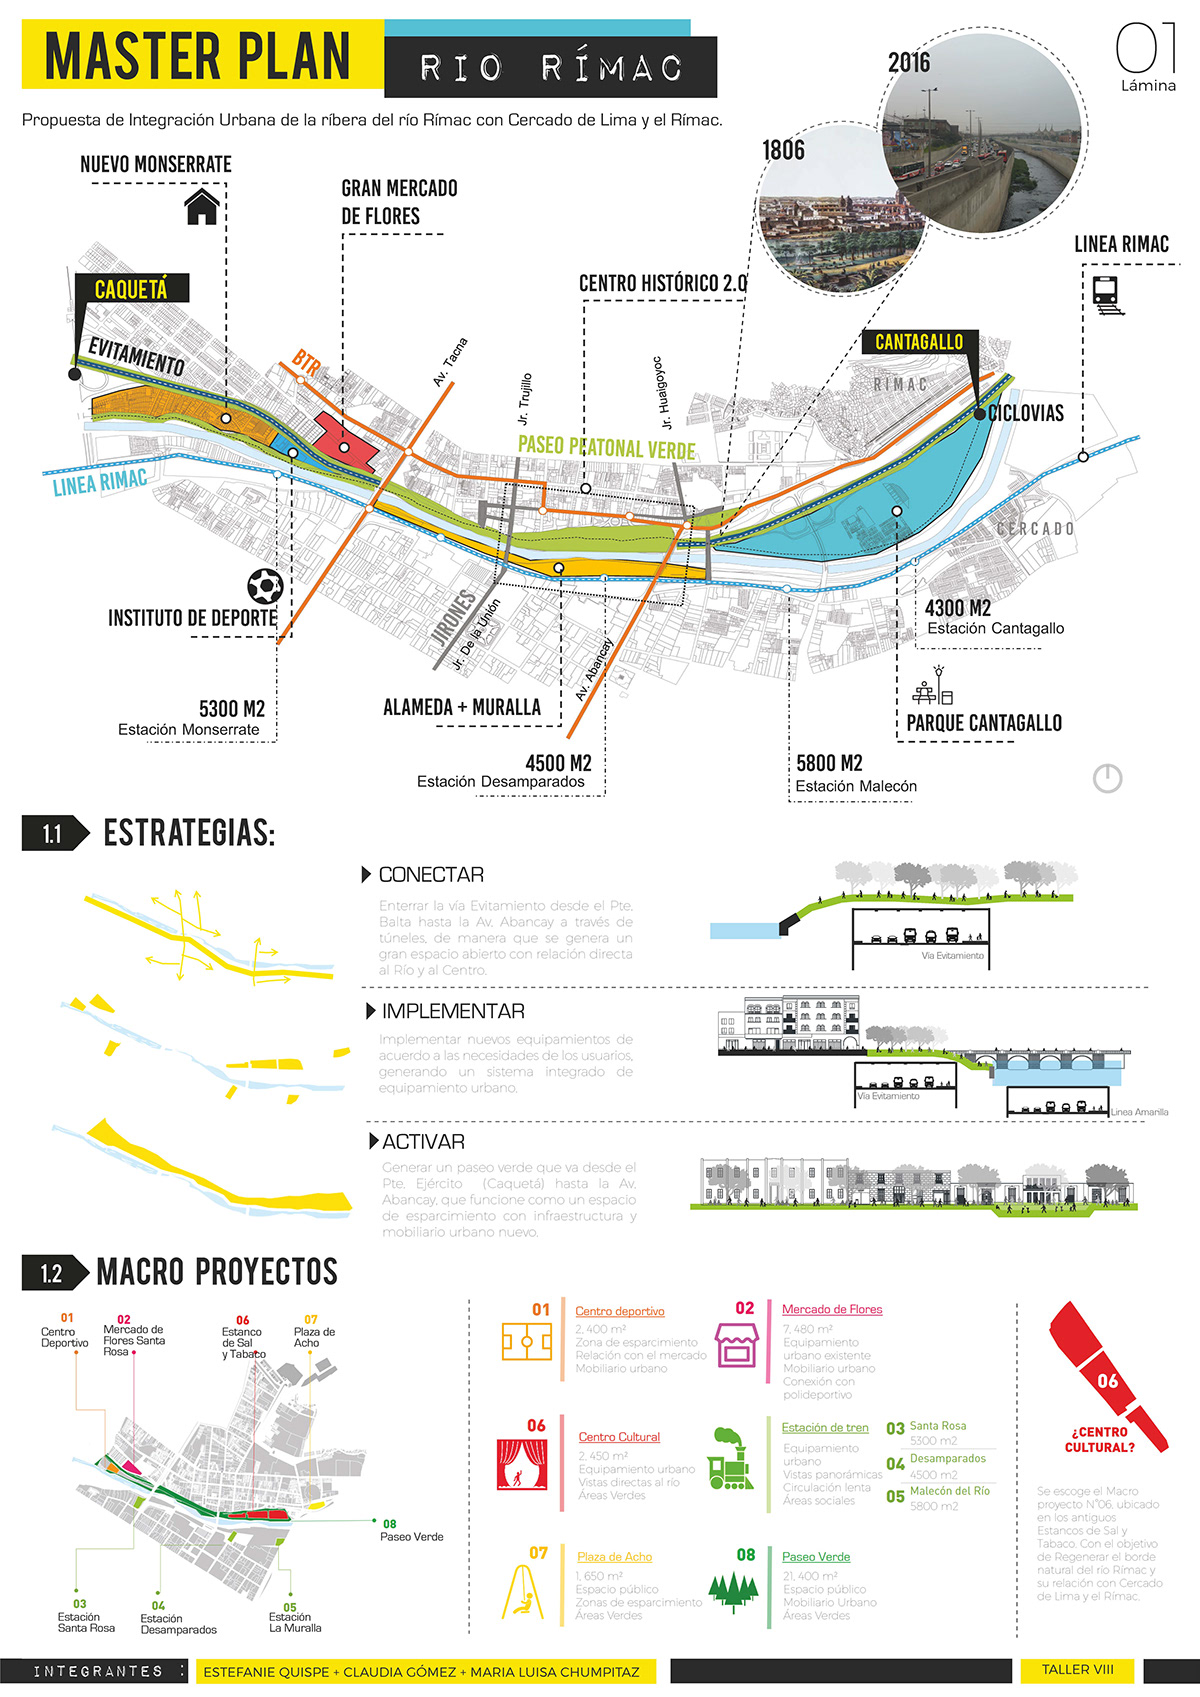 architecture lima Rimac Masterplan urbanismo river Landscape Urban graphics esquemas diagram